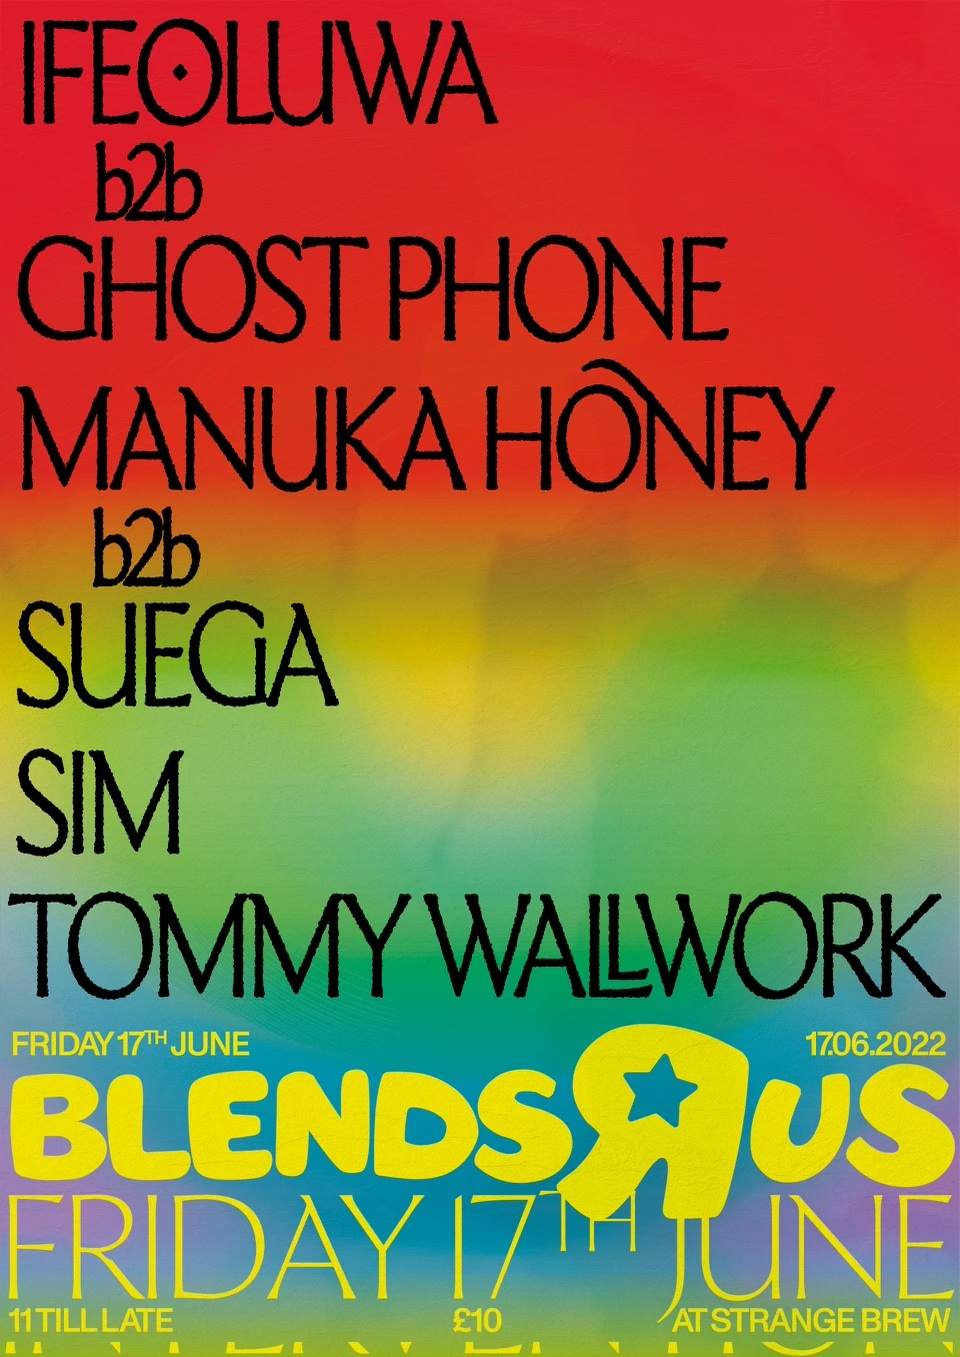 Blends 'R' Us: Manuka Honey b2b Sueuga, SIM & Tommy Wallwork - Página frontal